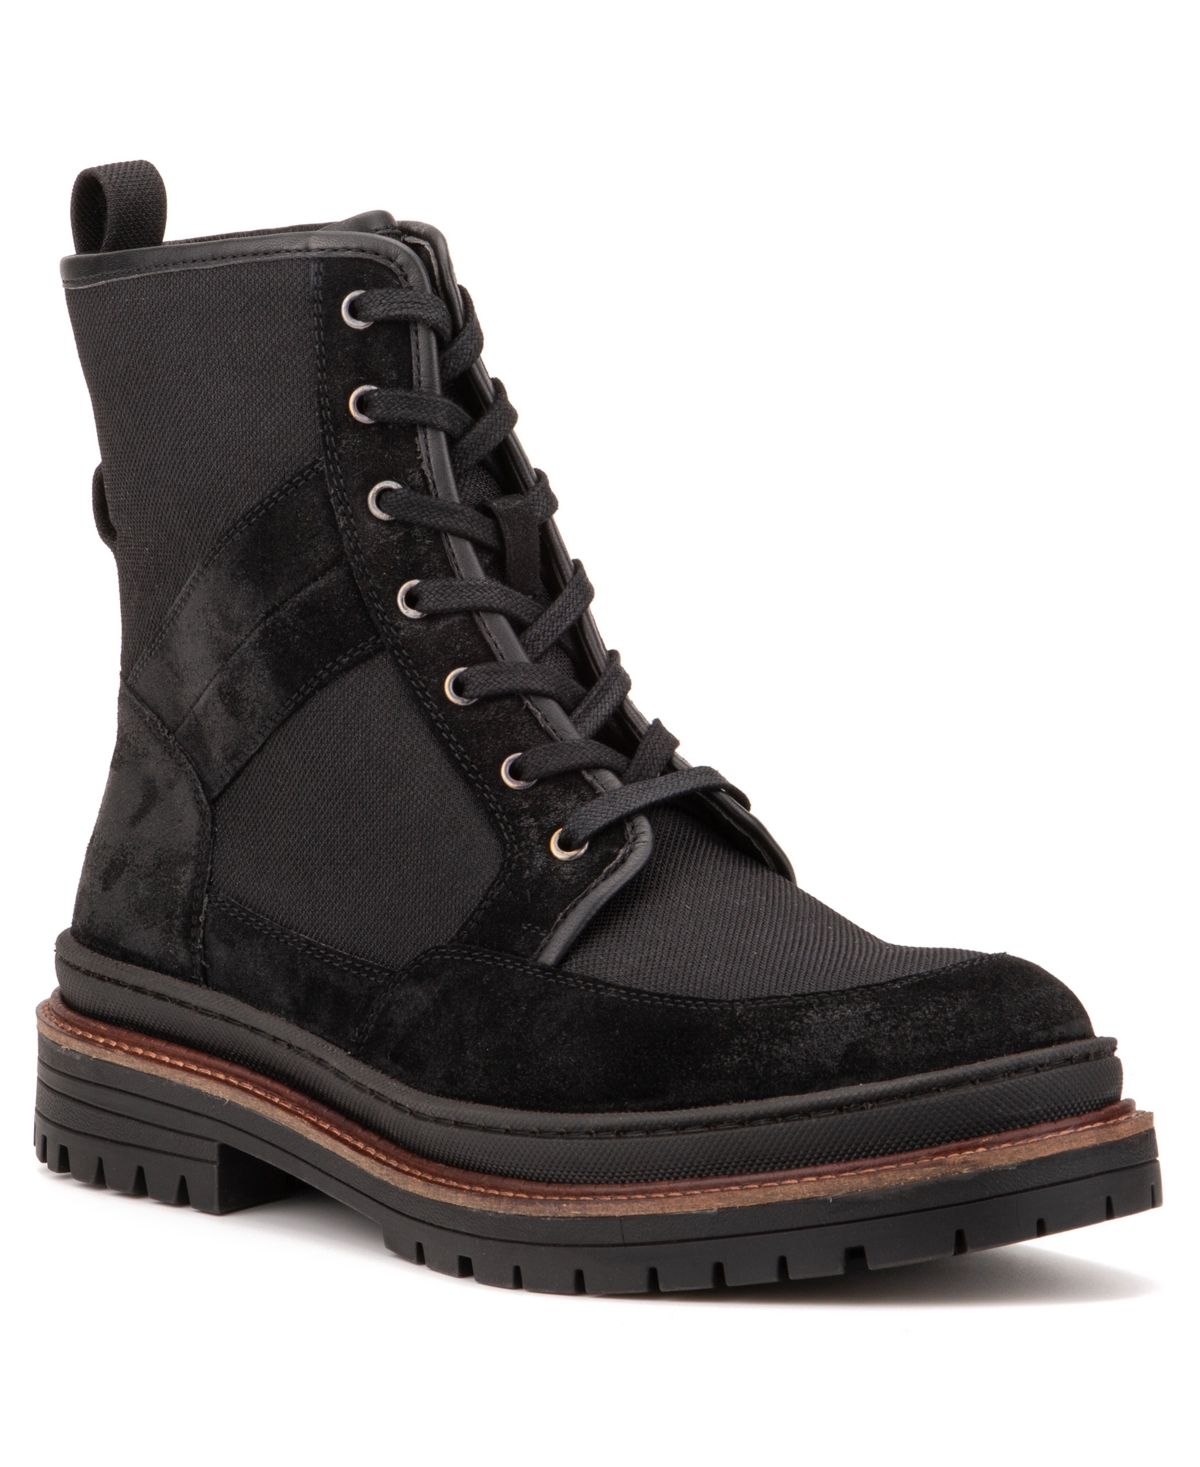 New York Men's Galvan Boot - Black